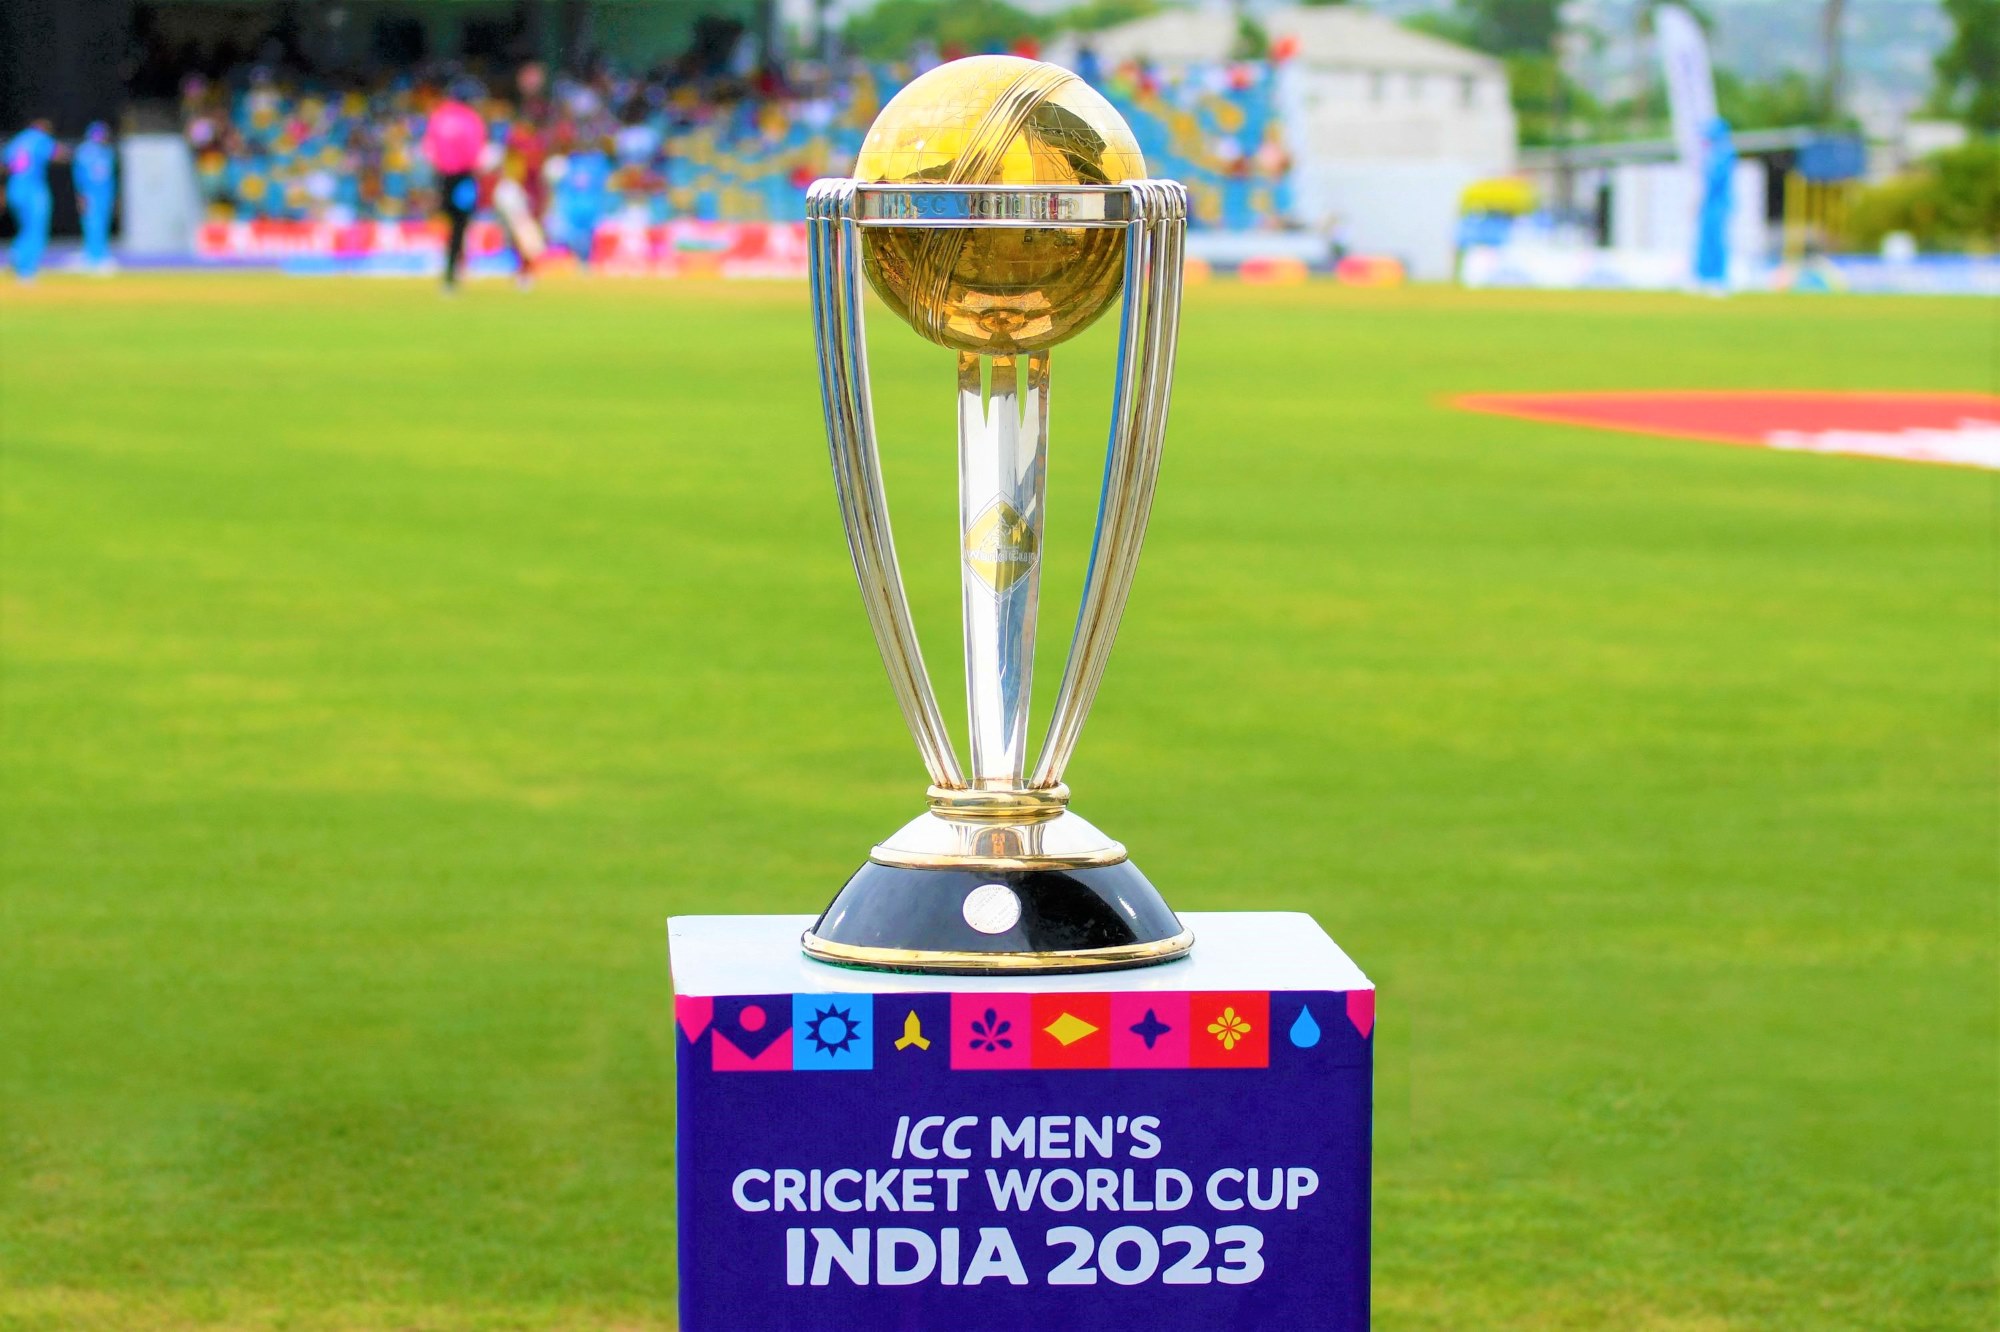 World Cup 2023 – साउथ अफ्रीका की श्रीलंका पर सबसे बड़ी जीत,102 रन से हराया, वहीं बांग्लादेश ने अफगानिस्तान को 6 विकेट से हराया